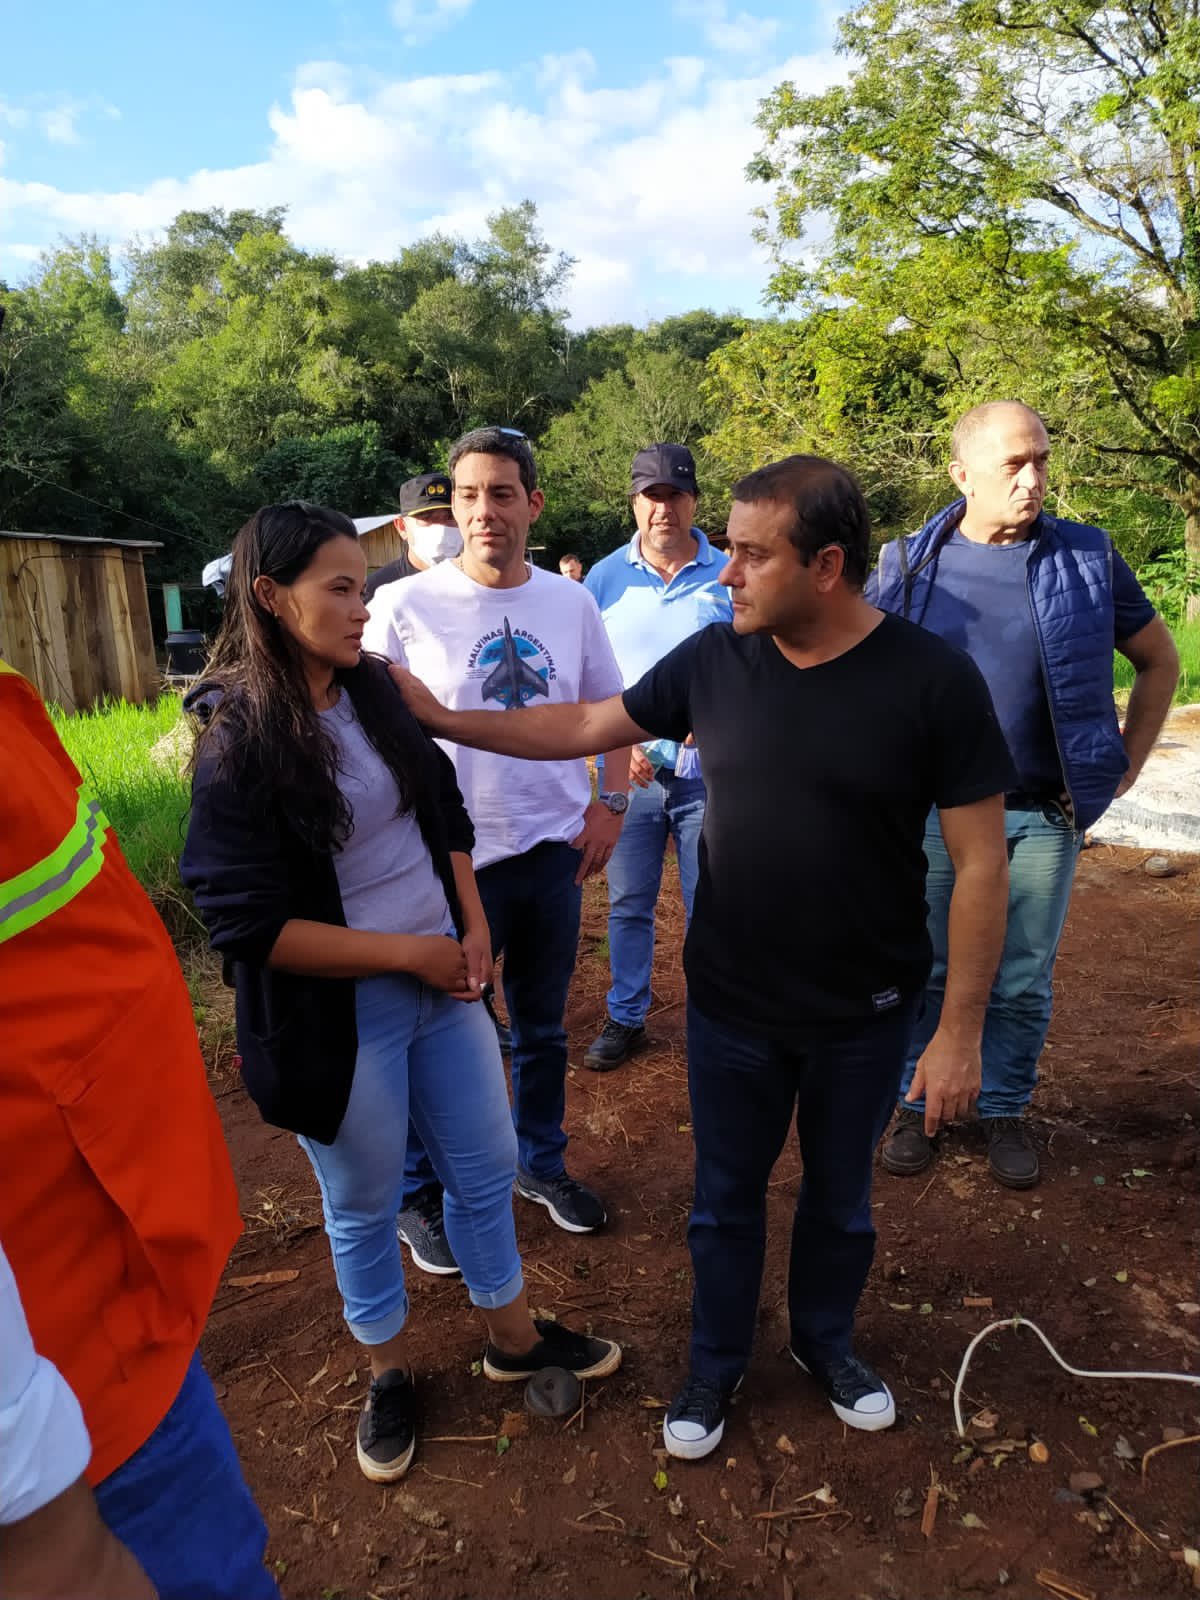 El gobernador Oscar Herrera Ahuad recorrió las zonas inundadas en El Soberbio por la crecida del Río Uruguay y asistió a las familias afectadas